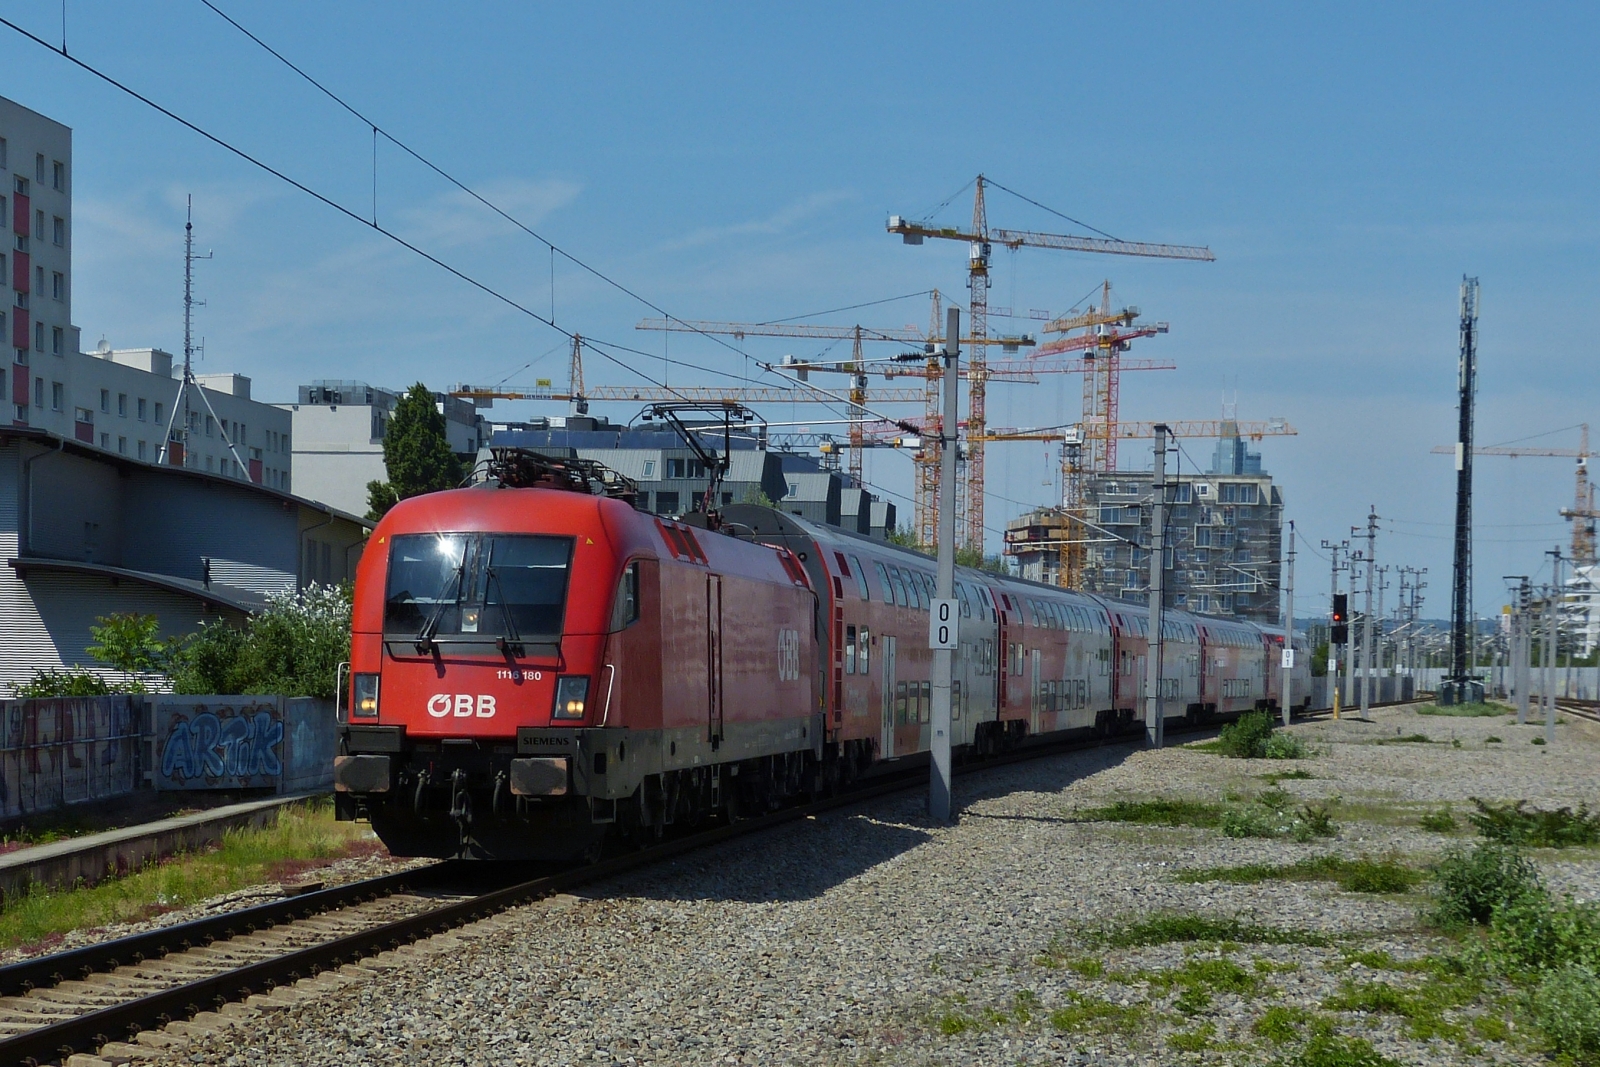 LOK 1116 180 mit ihrem Zug, als Rex 1 unterwegs nach Wien Neustadt über Wien Meidling, aufgenommen kurz vor der Einfahrt in den Bahnhof Praterplatz.

